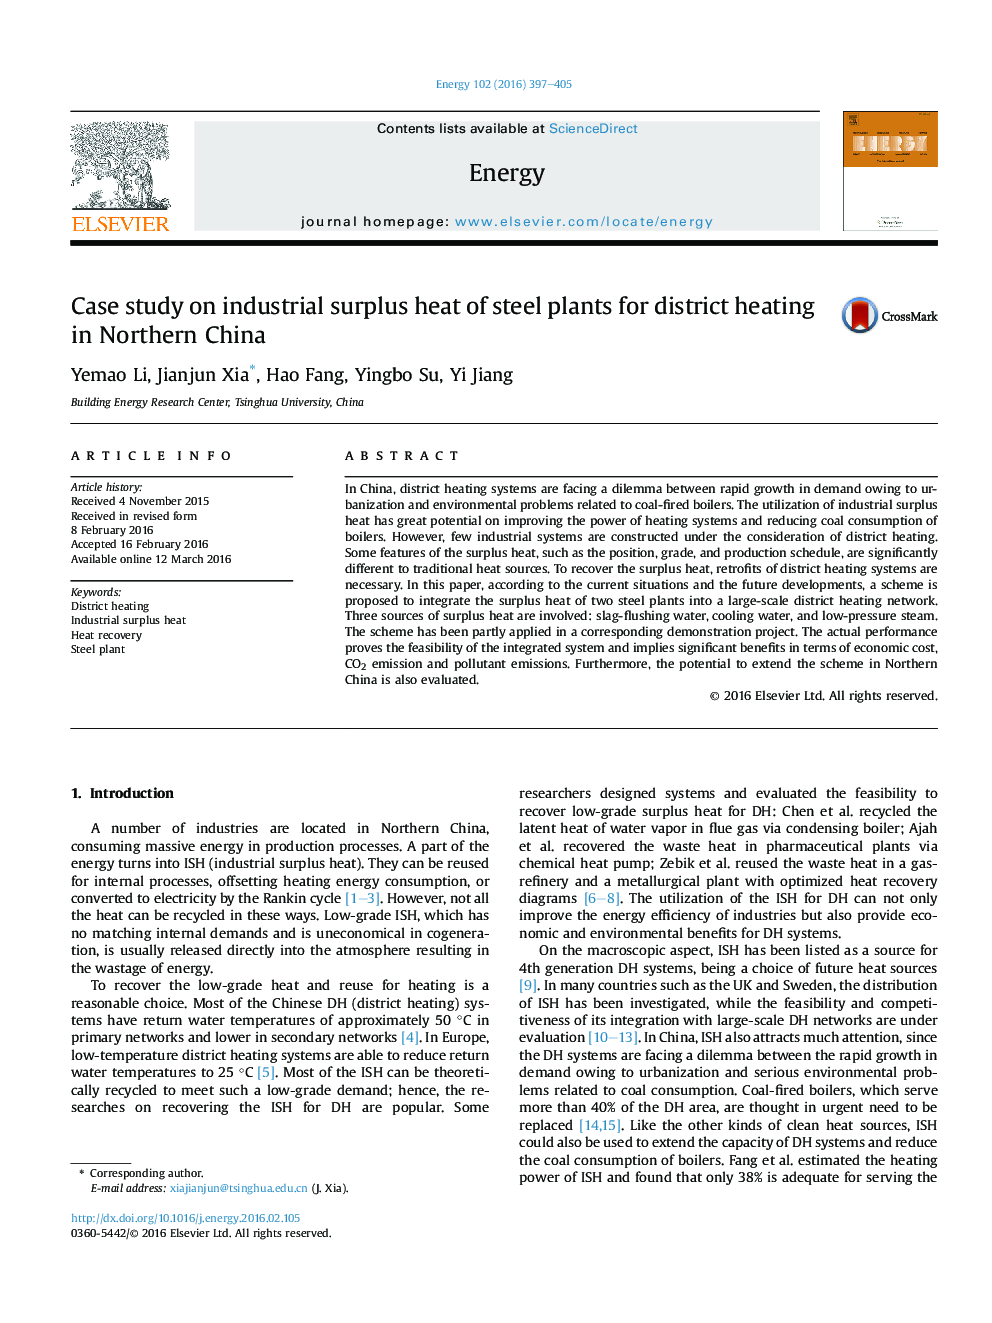 مطالعه موردی در مورد گرمای مفتول صنعتی گیاهان فولادی برای گرمایش منطقه در شمال چین 